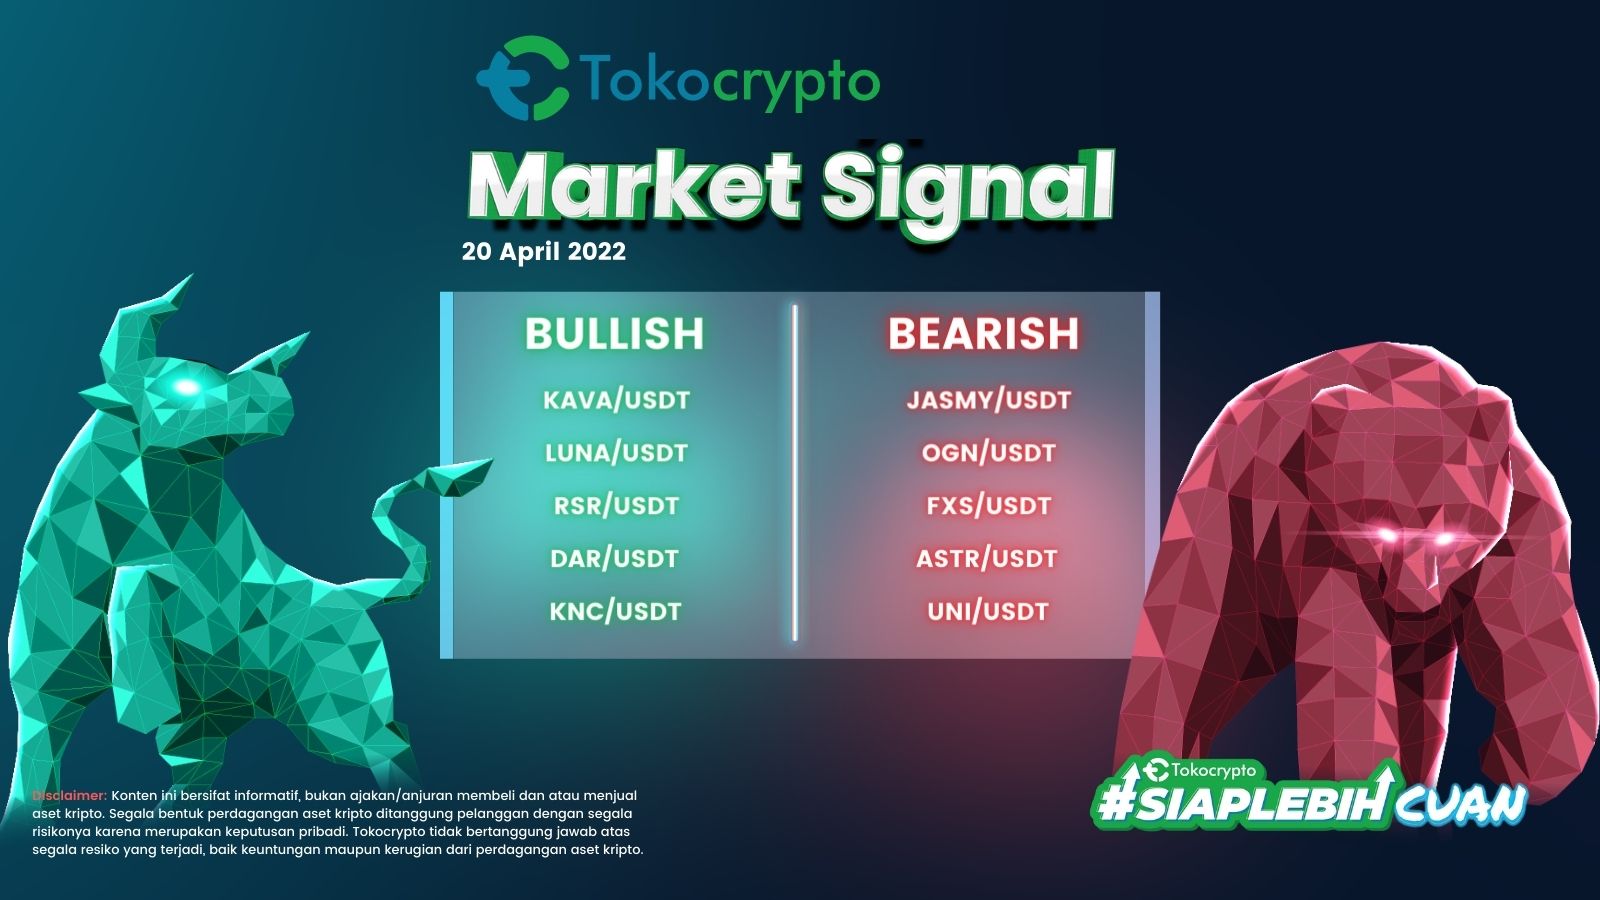 Ilustrasi Tokocrypto Market Signal 20 April 2022.